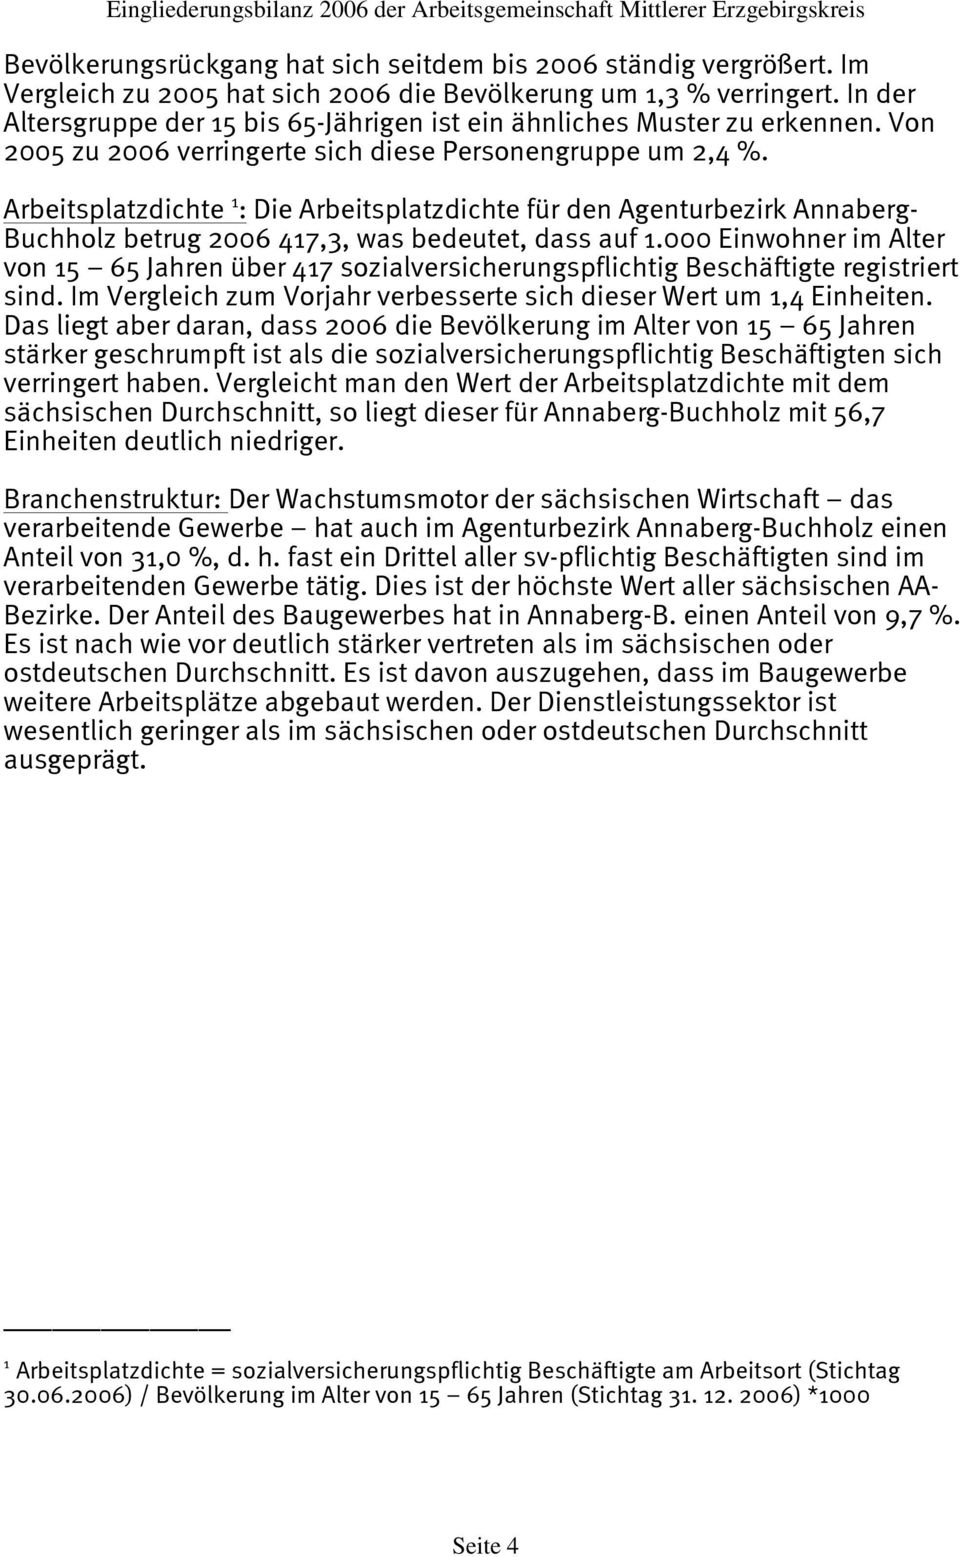 Arbeitsplatzdichte 1 : Die Arbeitsplatzdichte für den Agenturbezirk Annaberg- Buchholz betrug 2006 417,3, was bedeutet, dass auf 1.